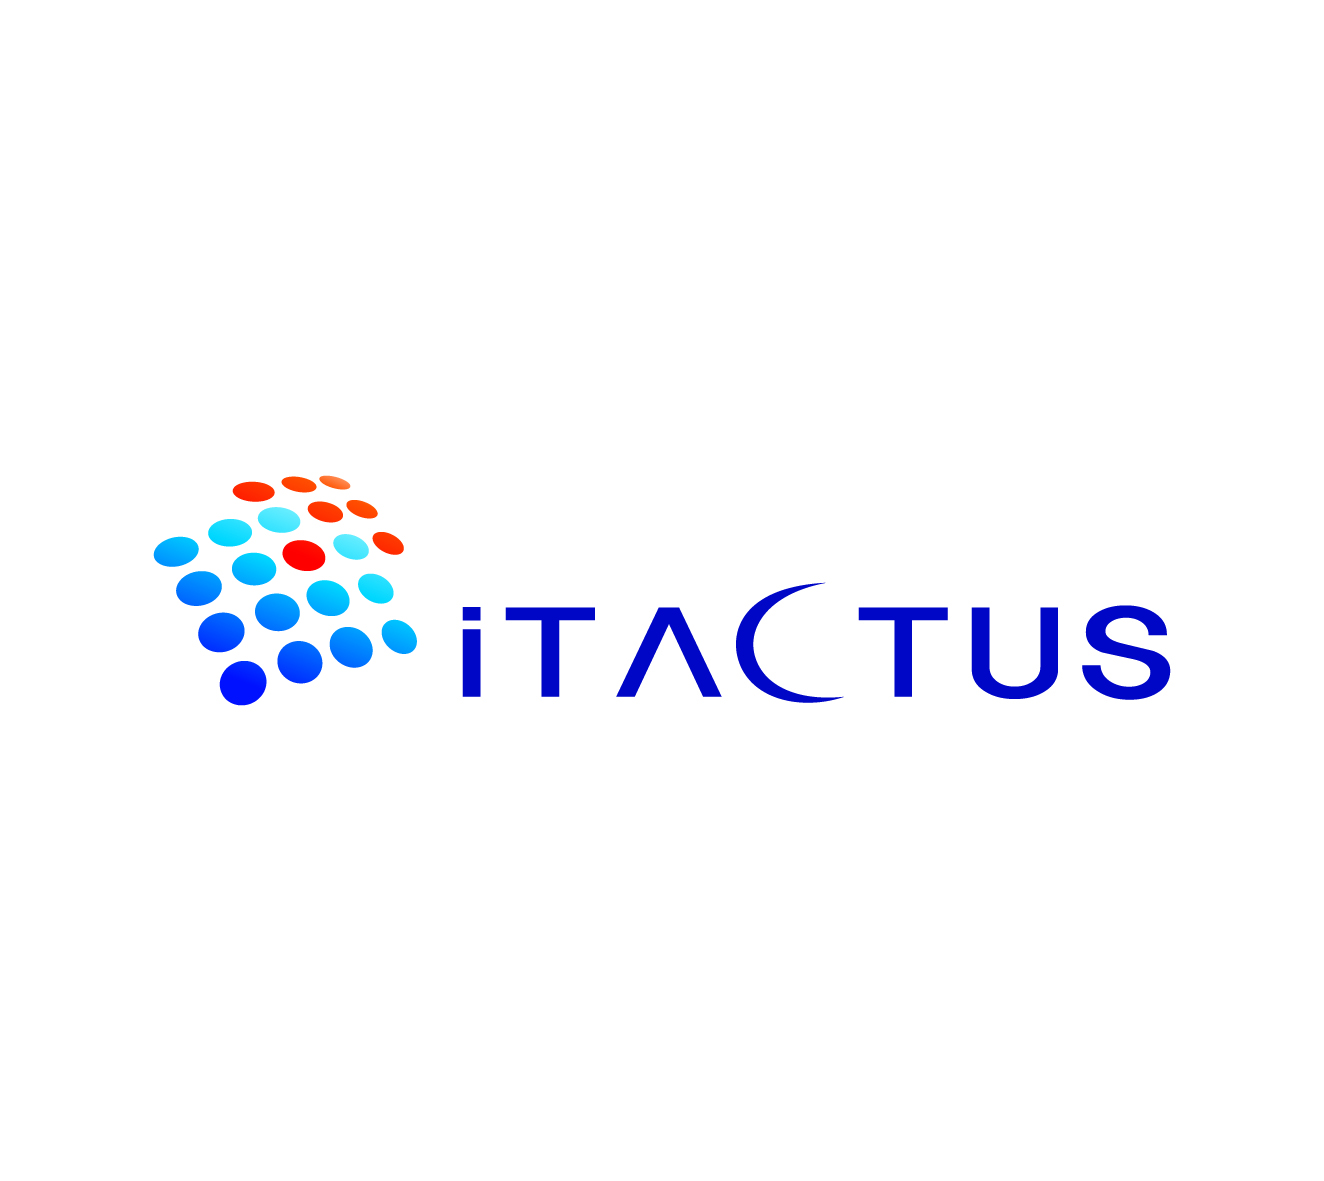 I-tactus Co.,Ltd.